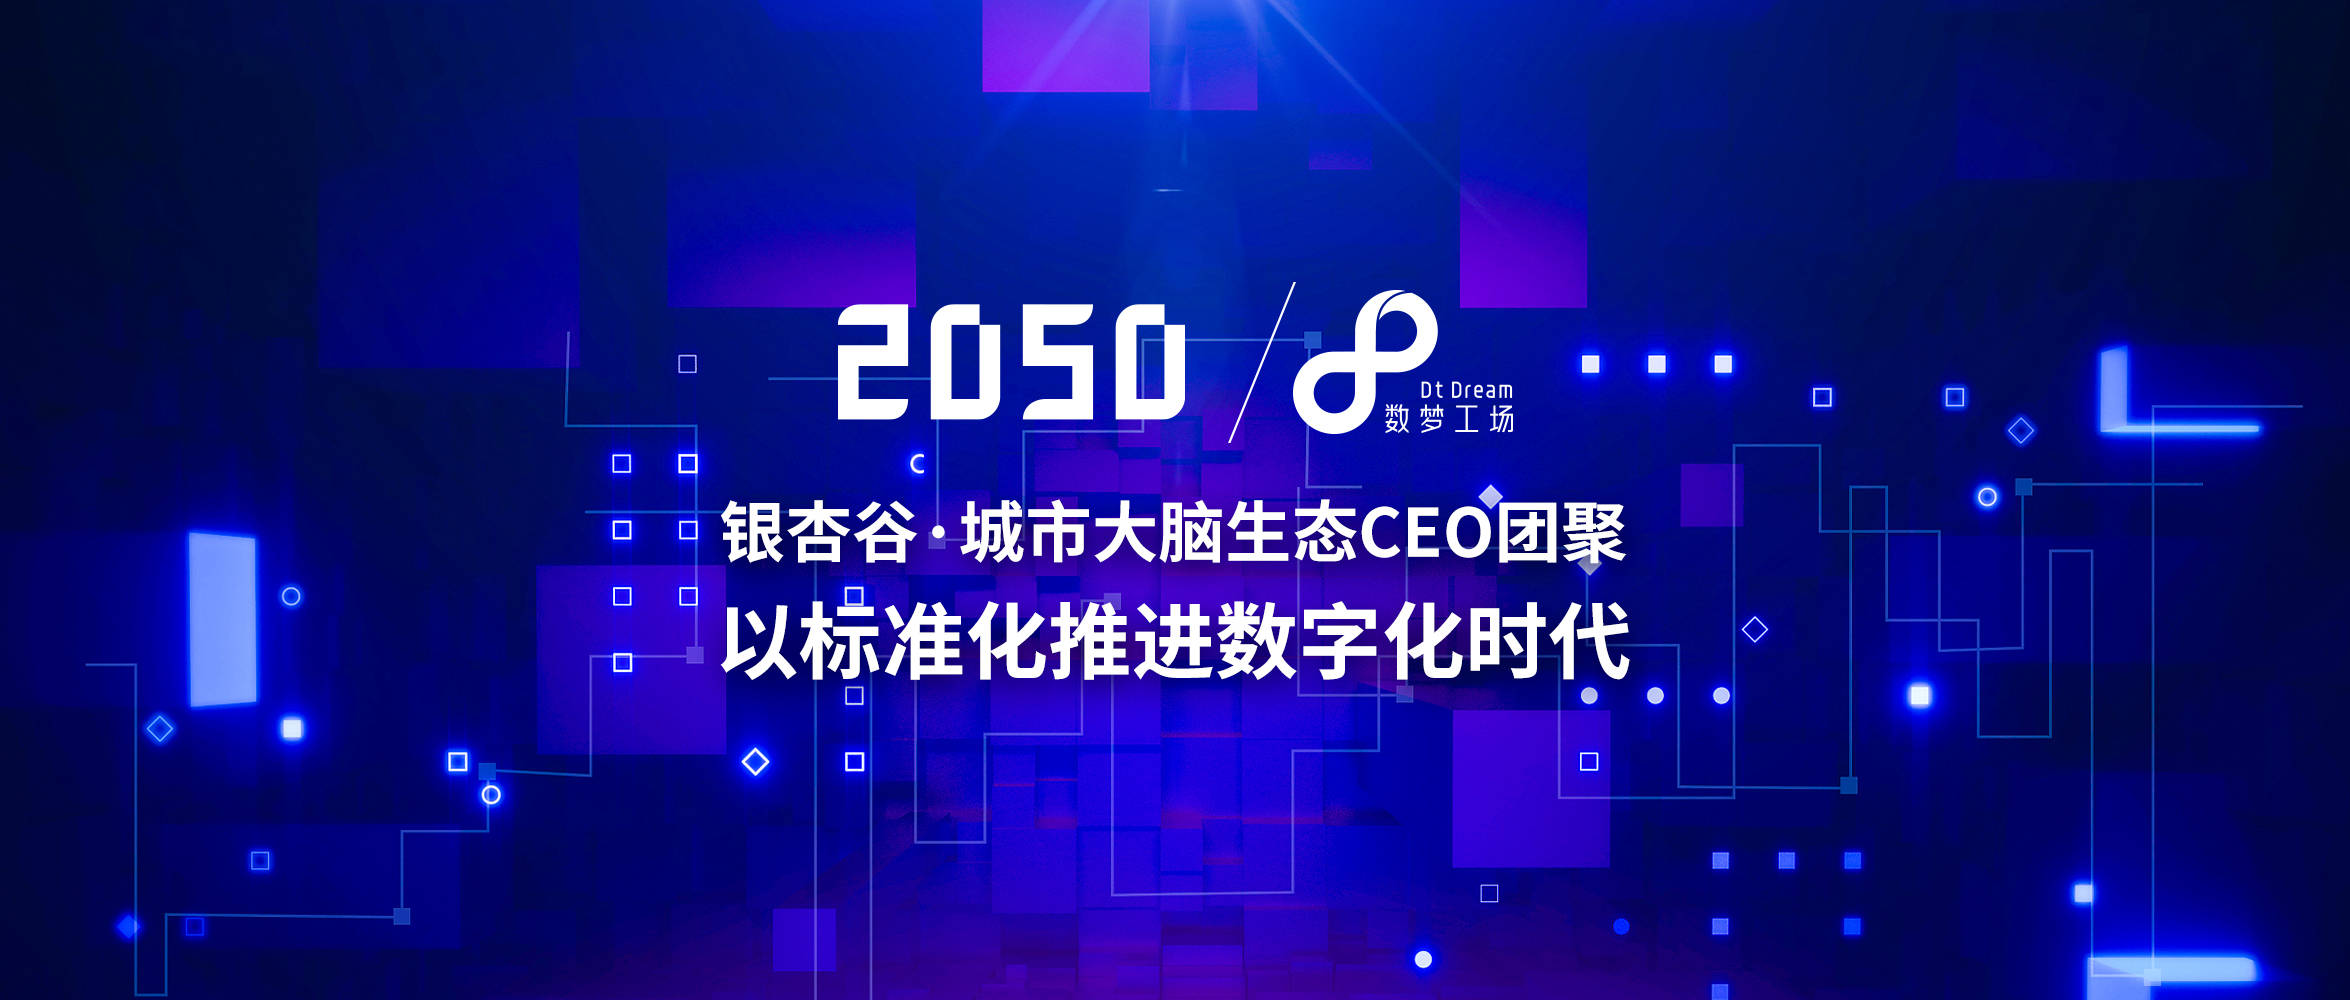 信标委|2050大会 | 数梦工场：以标准化推进数字化时代